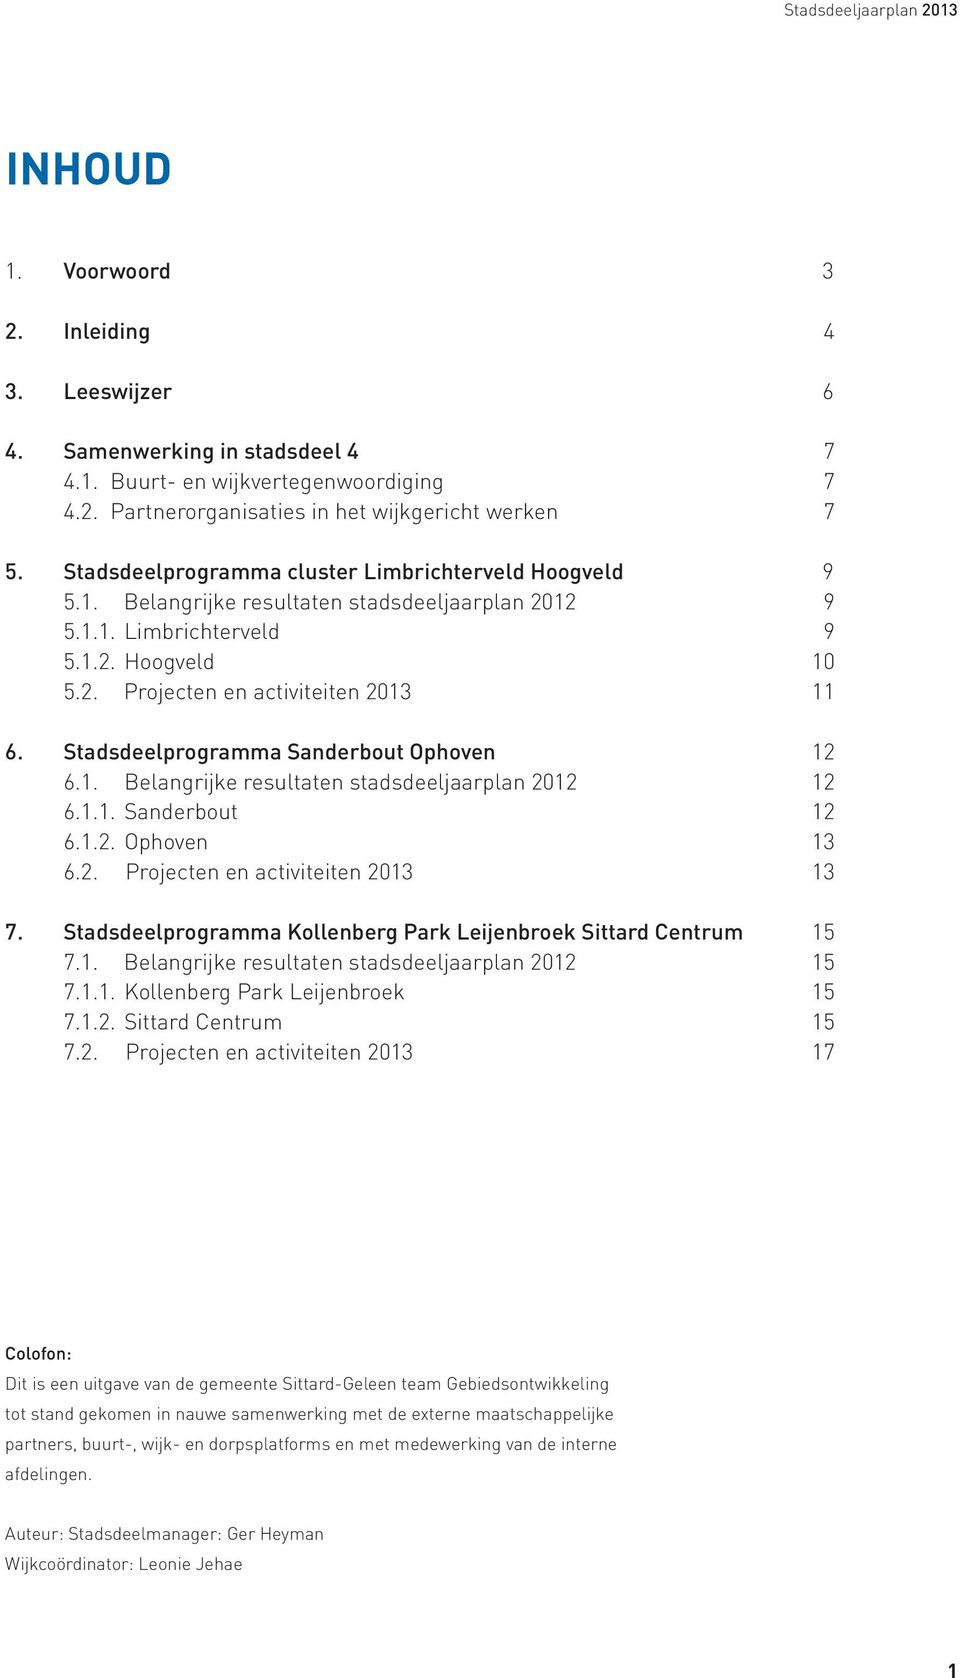 Stadsdeelprogramma Sanderbout Ophoven 12 6.1. Belangrijke resultaten stadsdeeljaarplan 2012 12 6.1.1. Sanderbout 12 6.1.2. Ophoven 13 6.2. Projecten en activiteiten 2013 13 7.